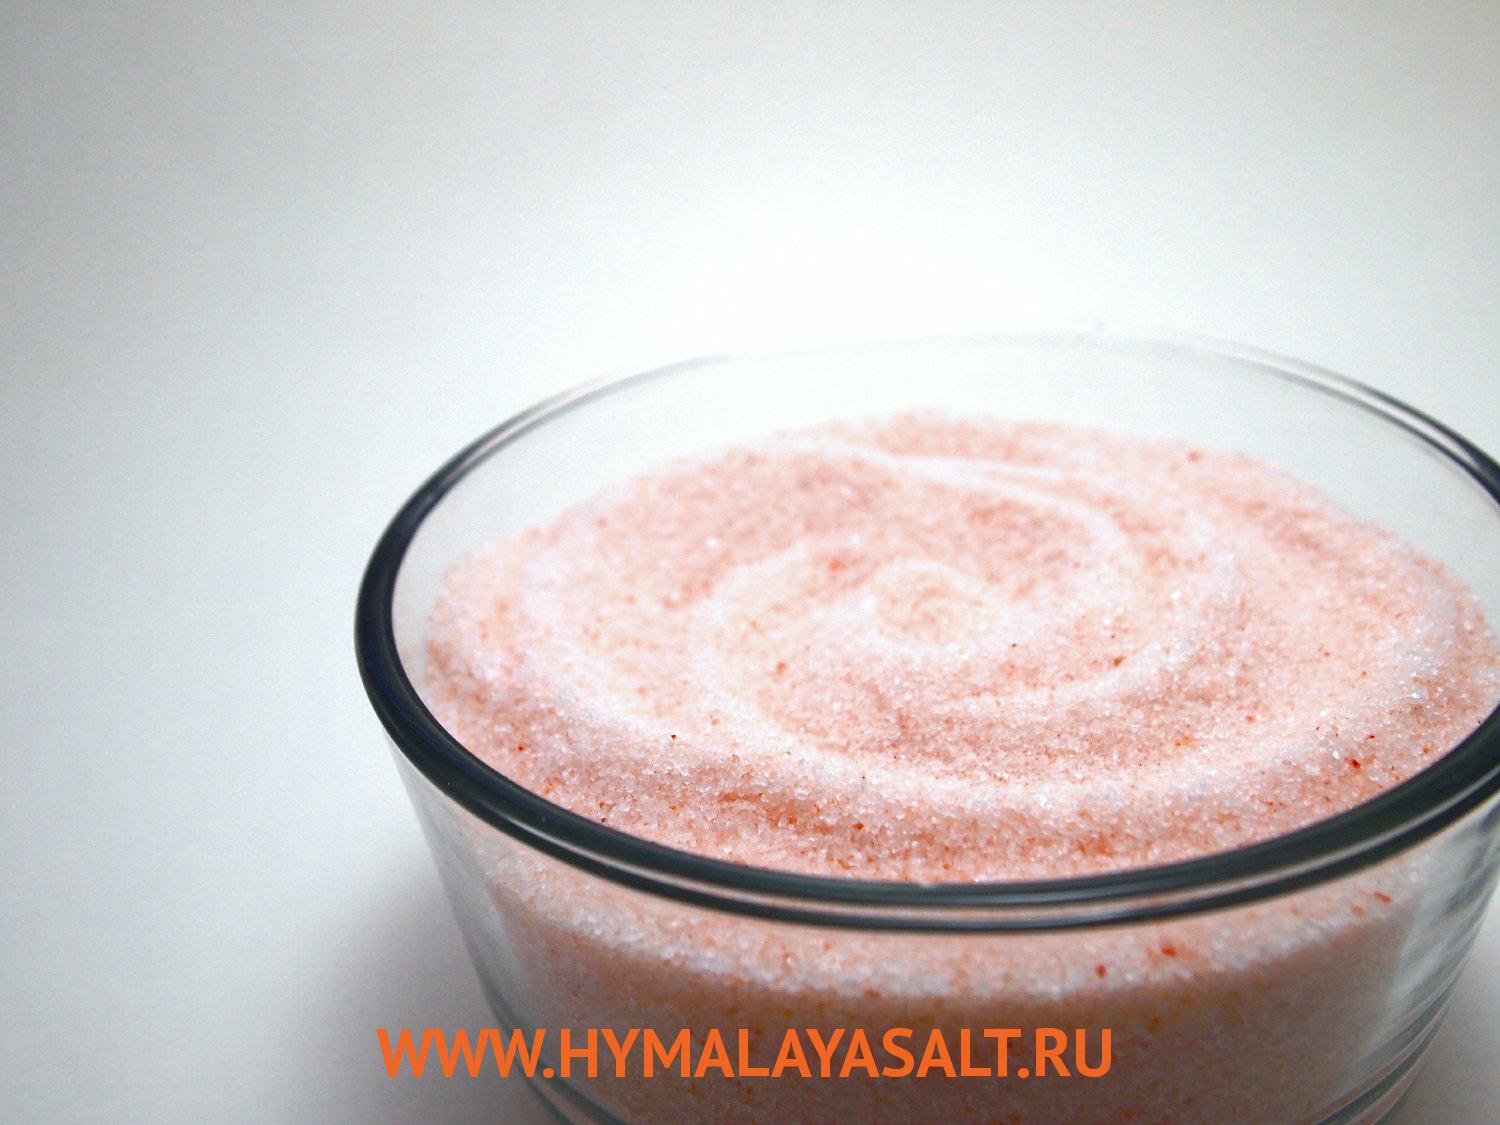 Гималайская соль: Средняя розовая гималайская соль, 1 кг, 2 мм, мешок без маркировки